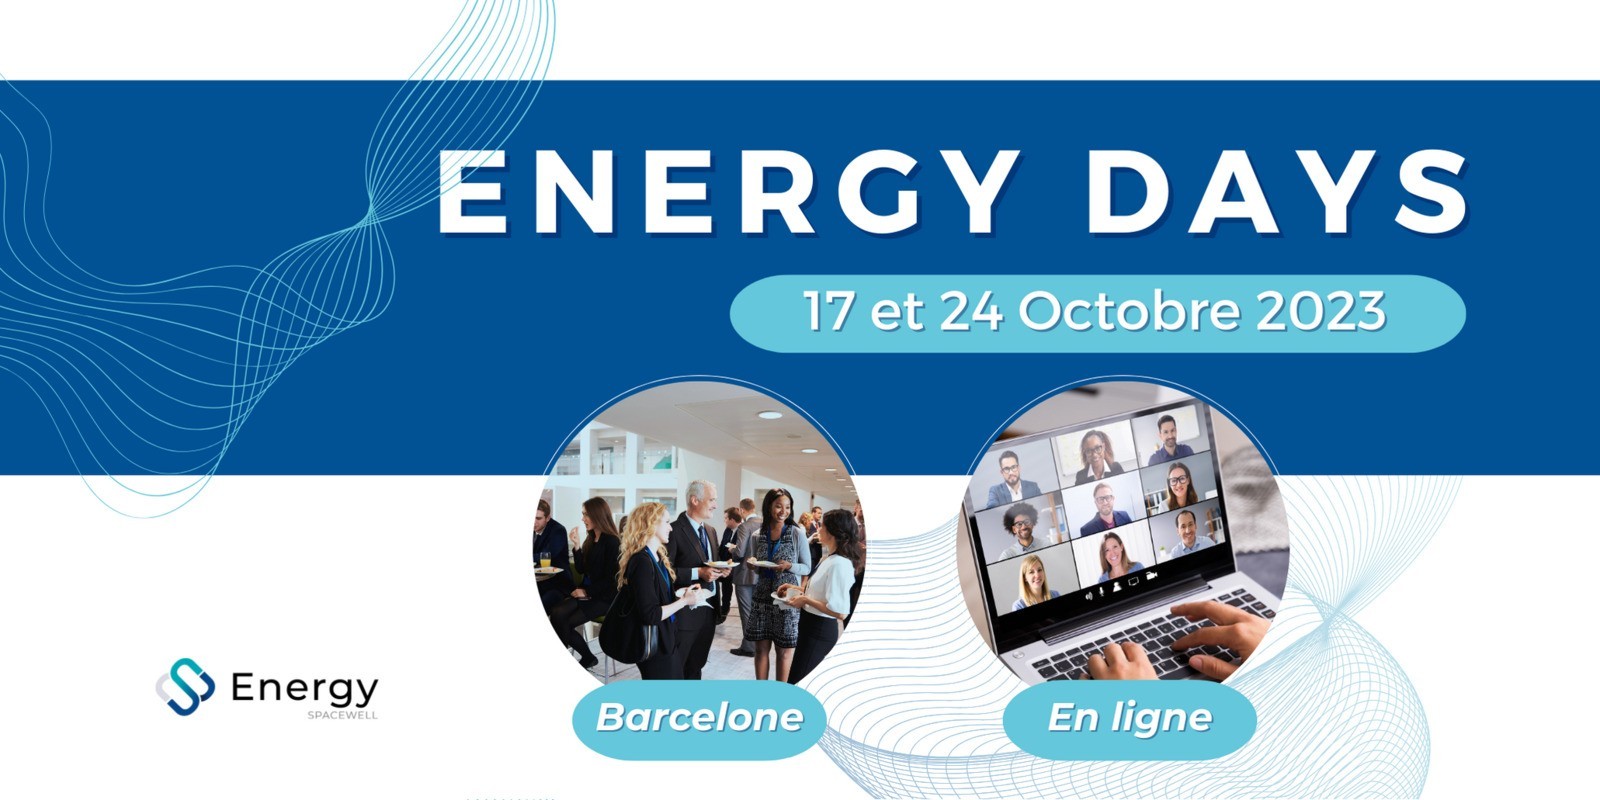 Energy Day 2023 : l'événement accélérateur de transition énergétique pour les entreprises